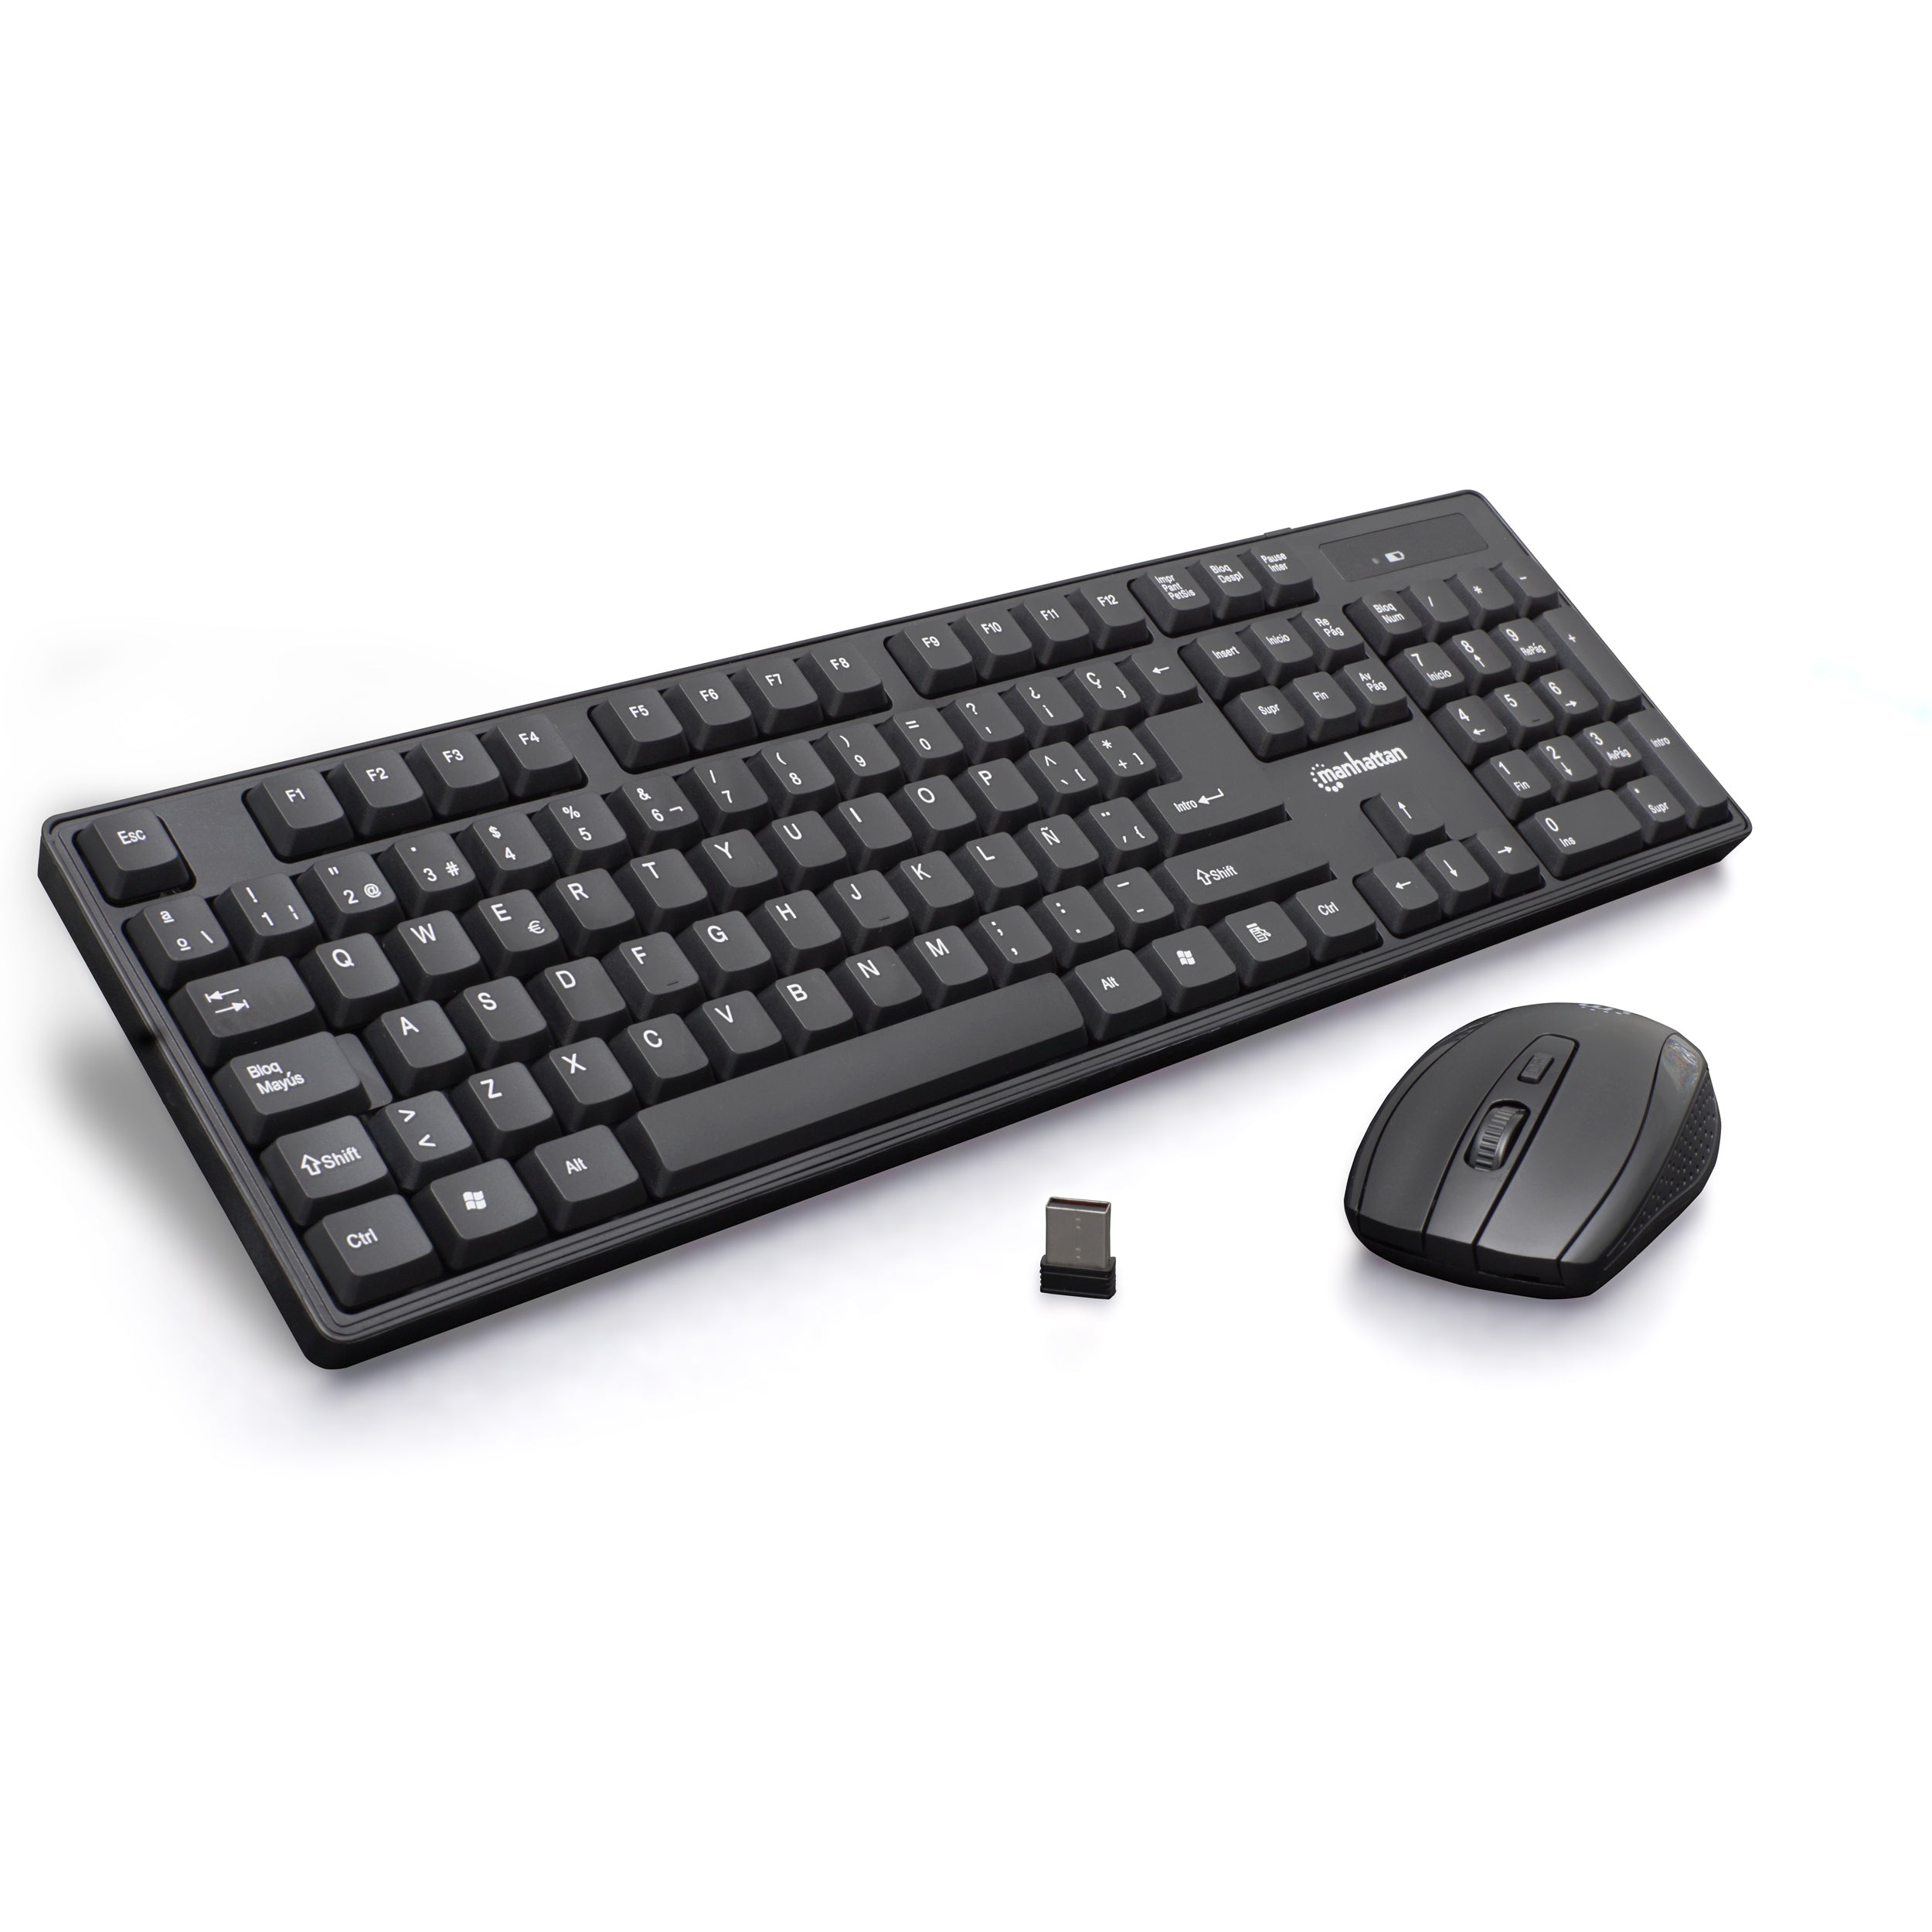 Combo de mouse y teclado